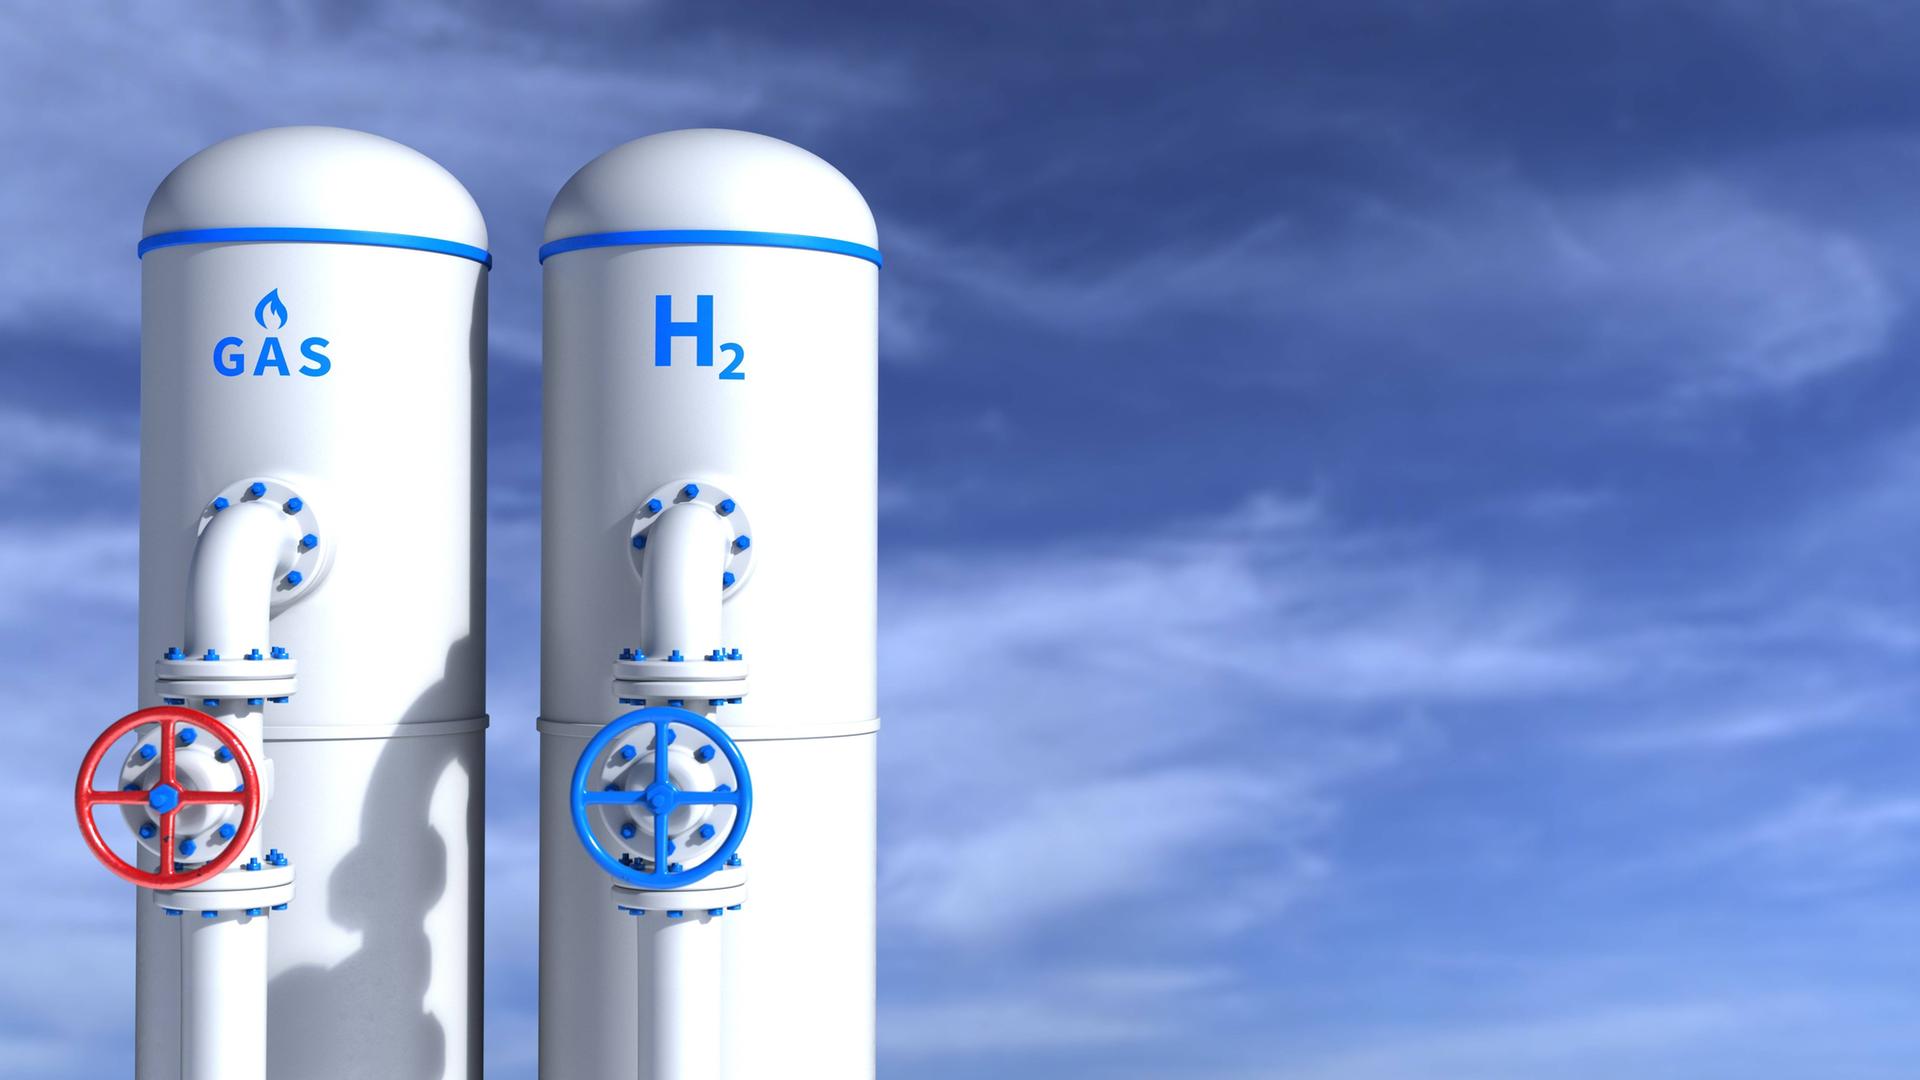 Zwei weiße Tanks vor blauem Himmel: Auf dem linken Tank steht "Gas", auf dem rechten "H2".